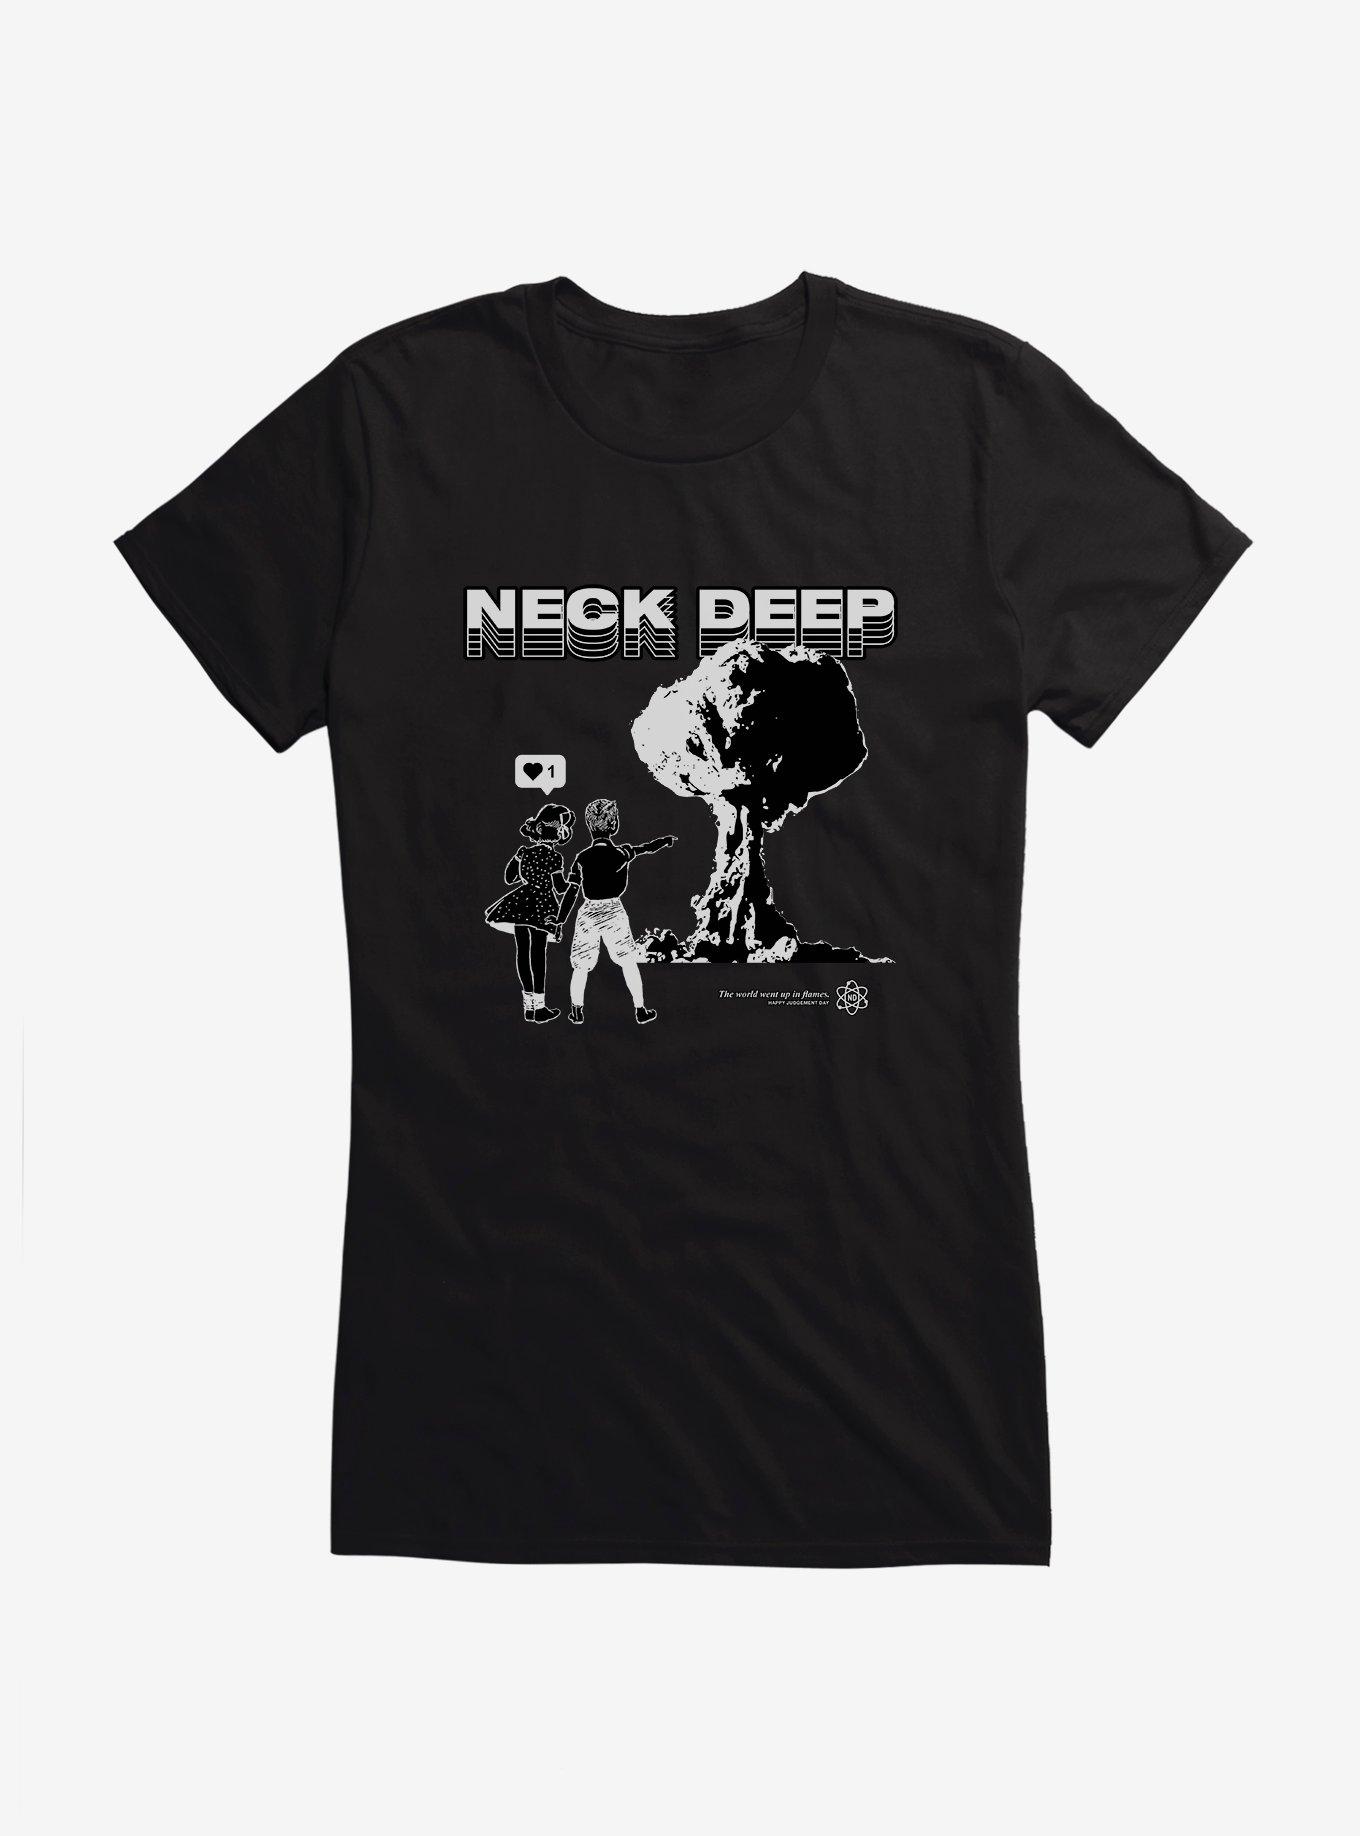 Neck Deep Nuclear Couple Girls T-Shirt